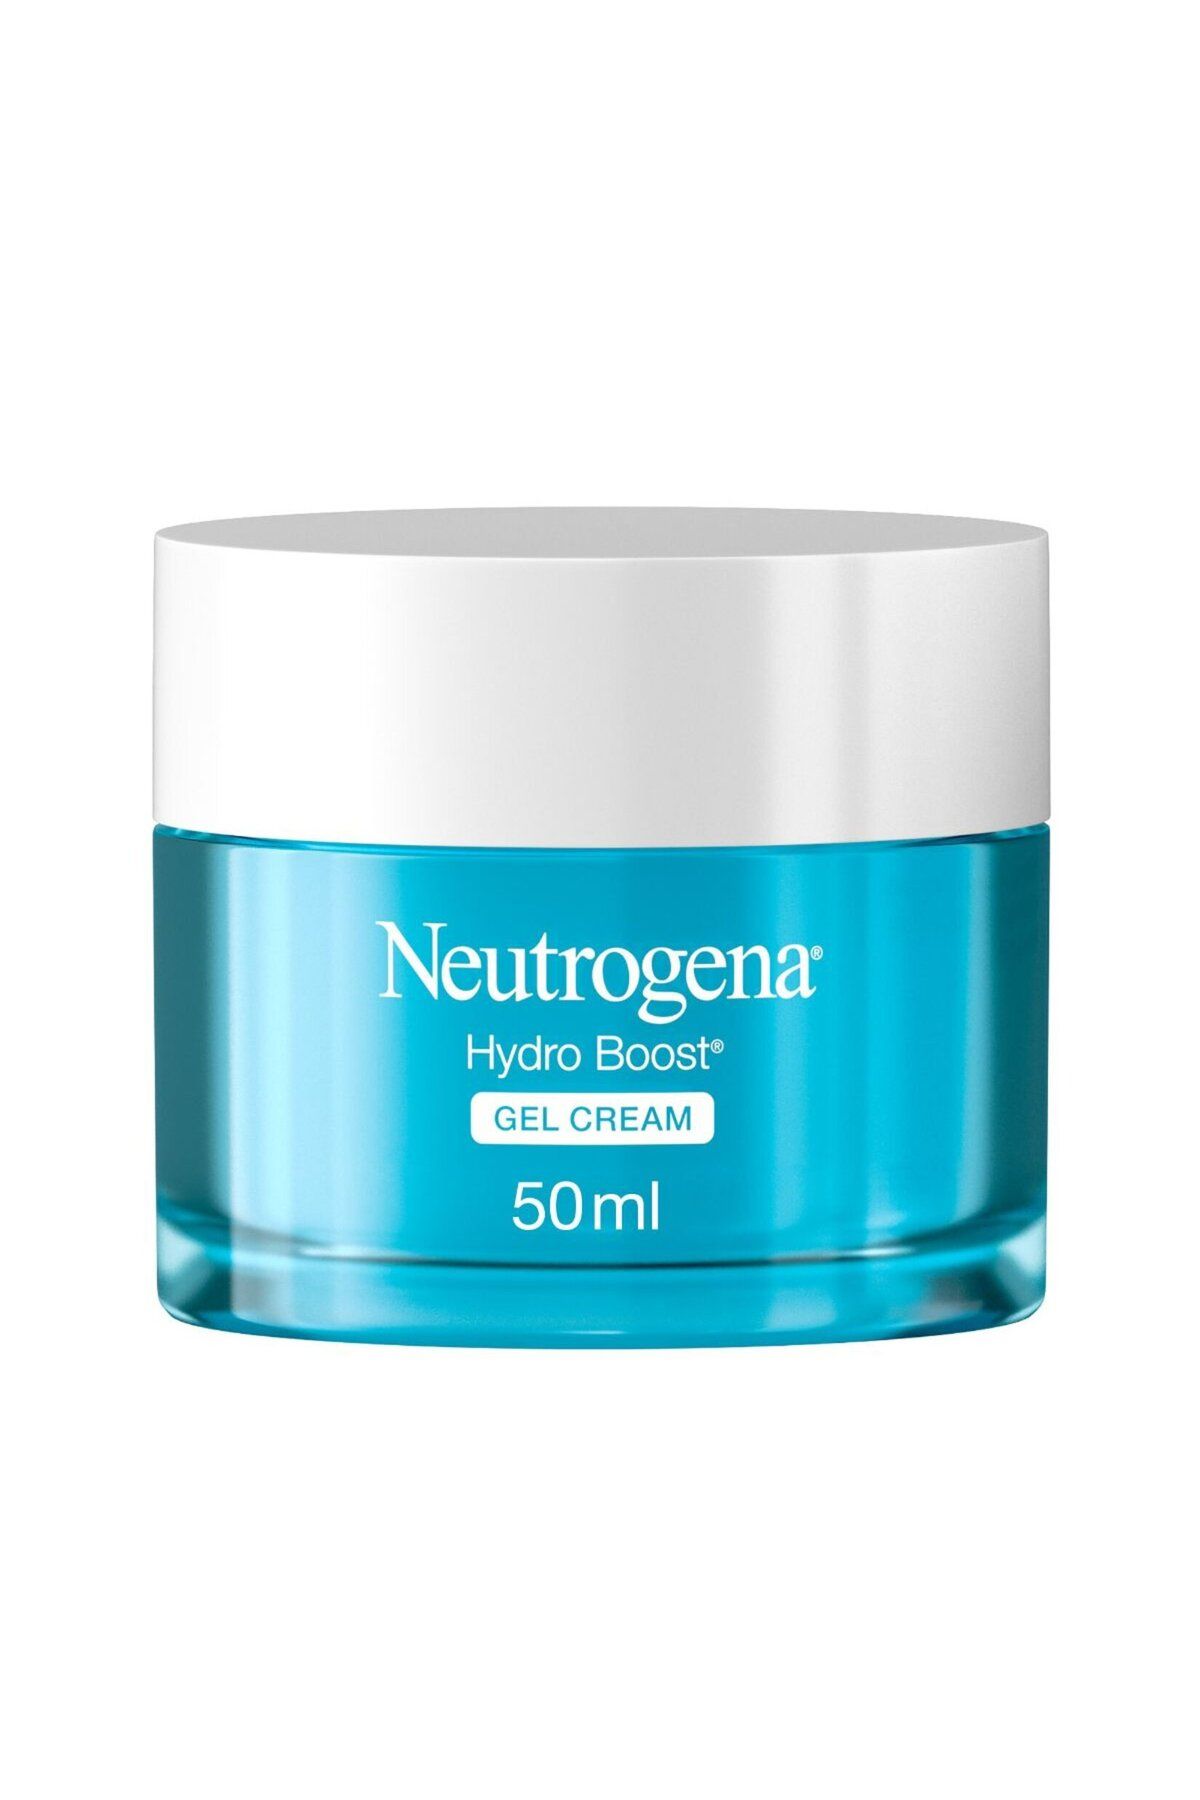 Neutrogena Hydro Boost Gel Cream Nemlendirici Kuru Ciltler I?çin Krem 50 ml